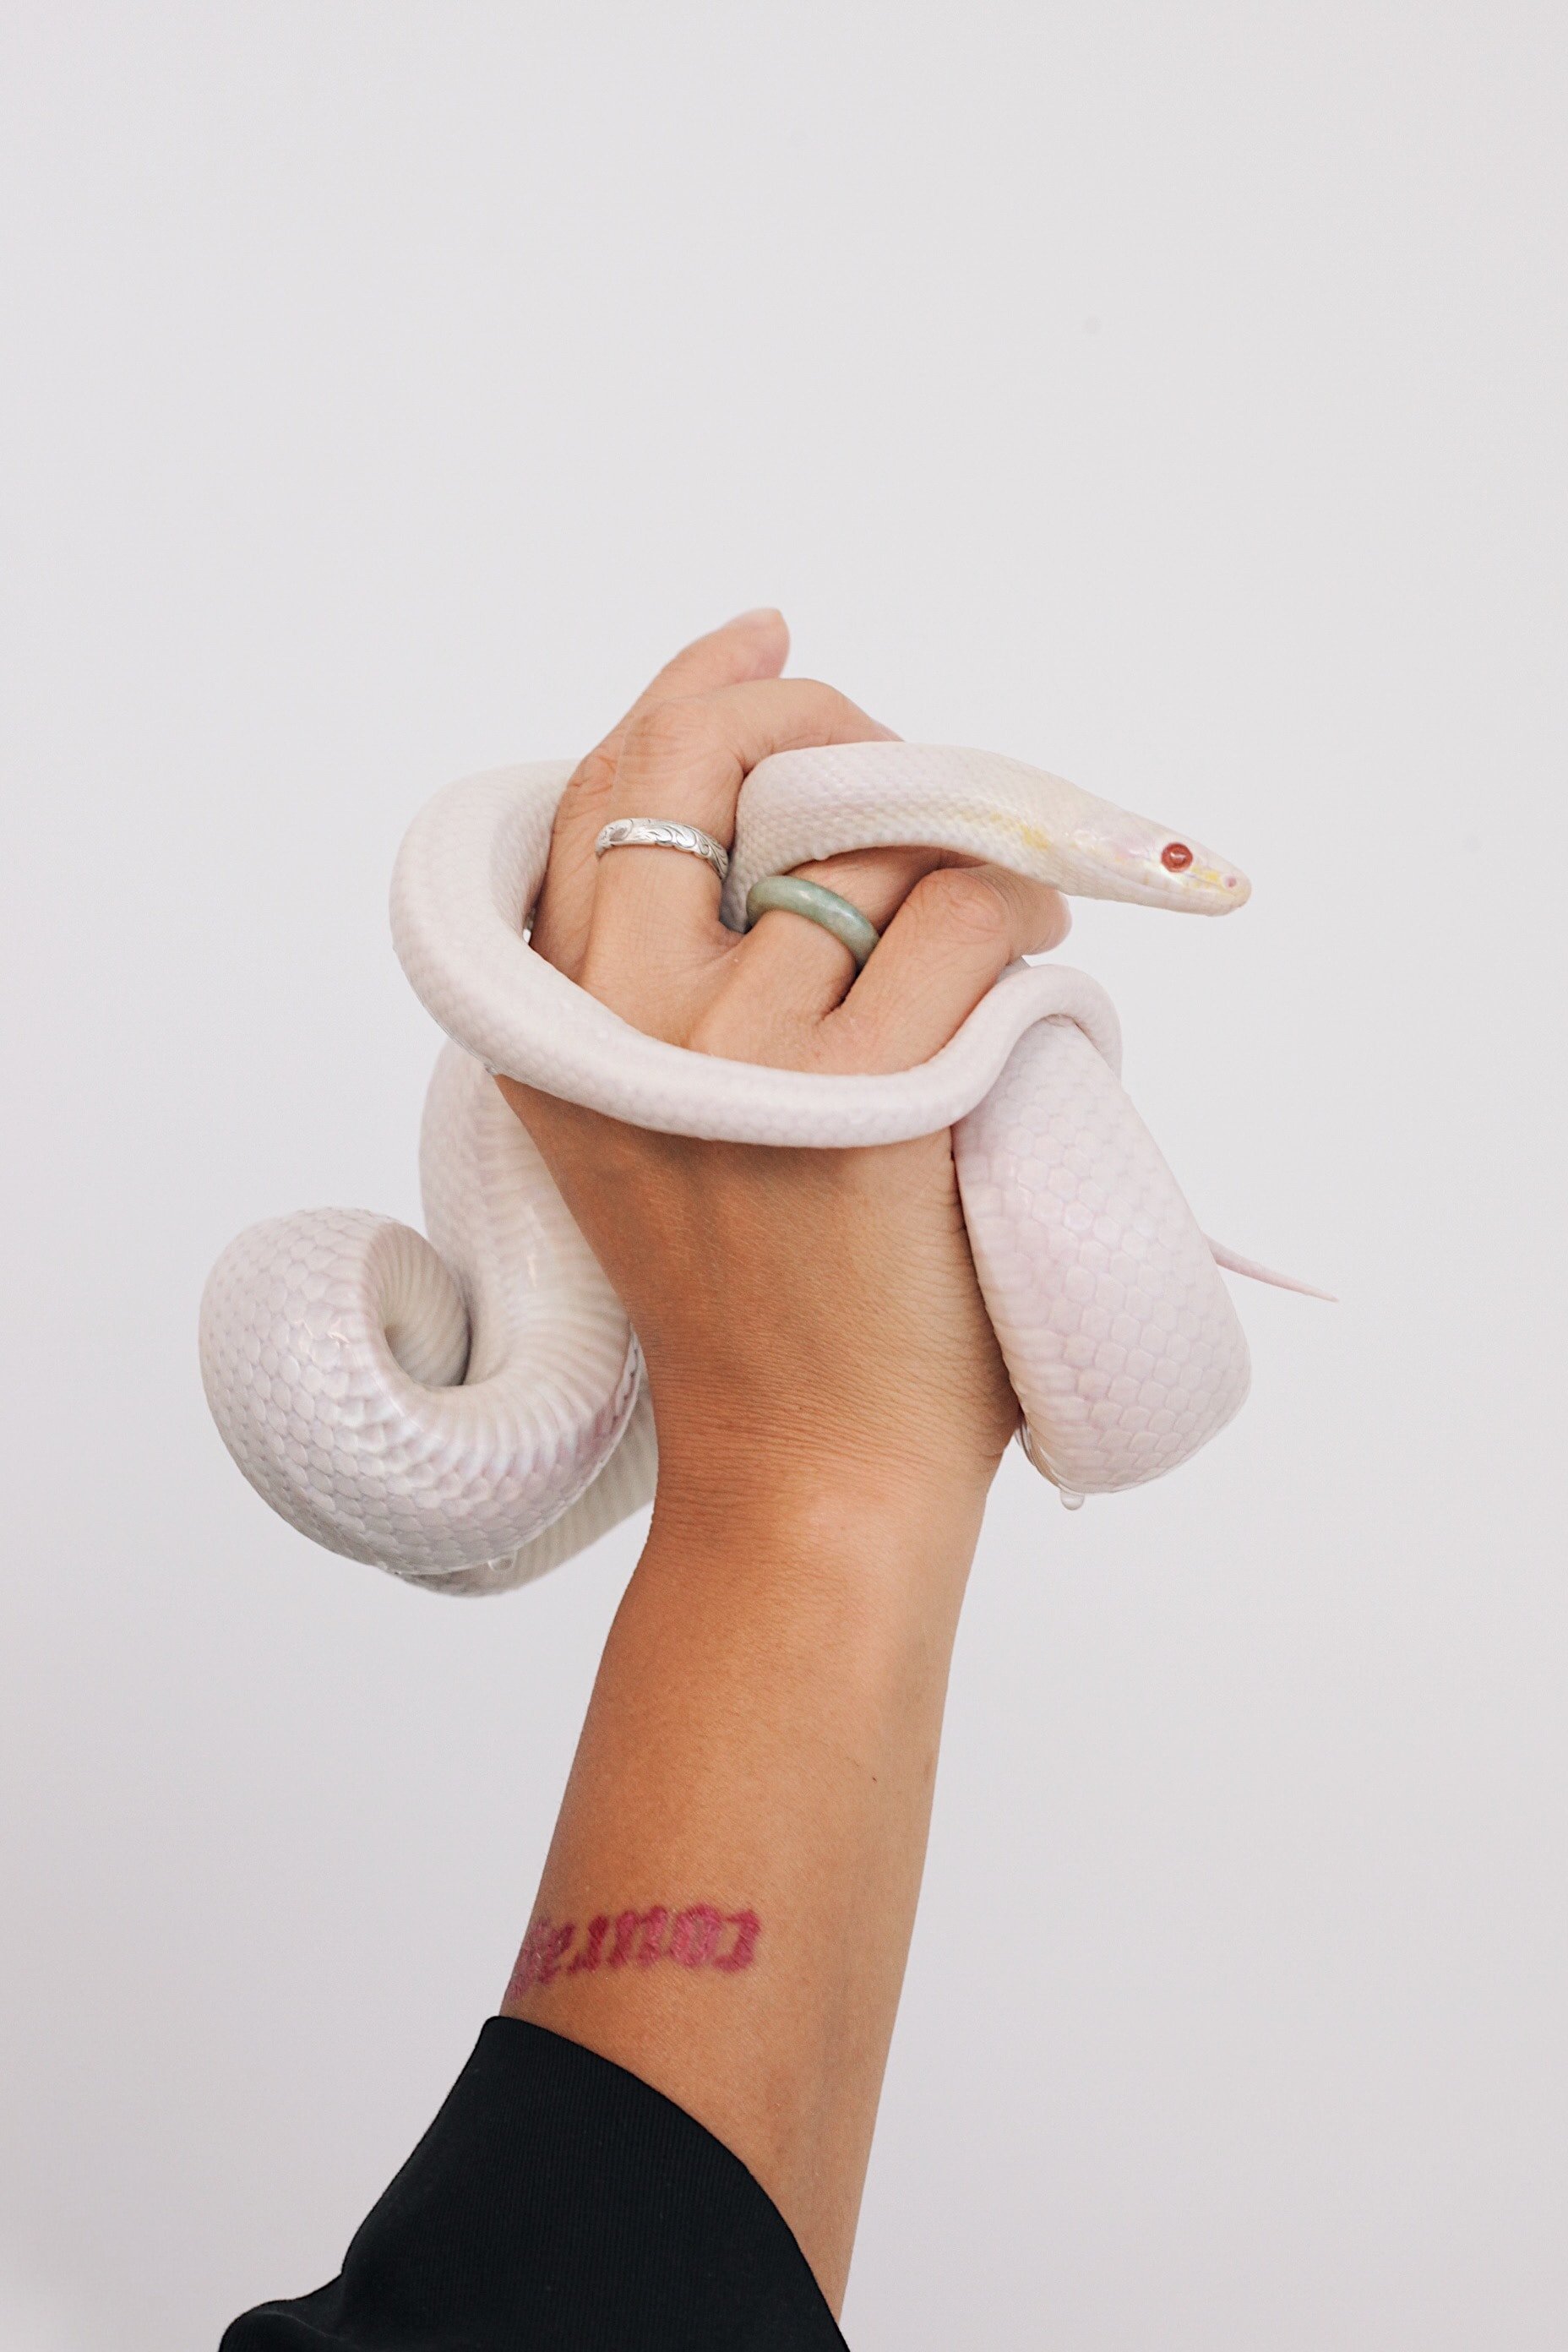 Holding White Snake